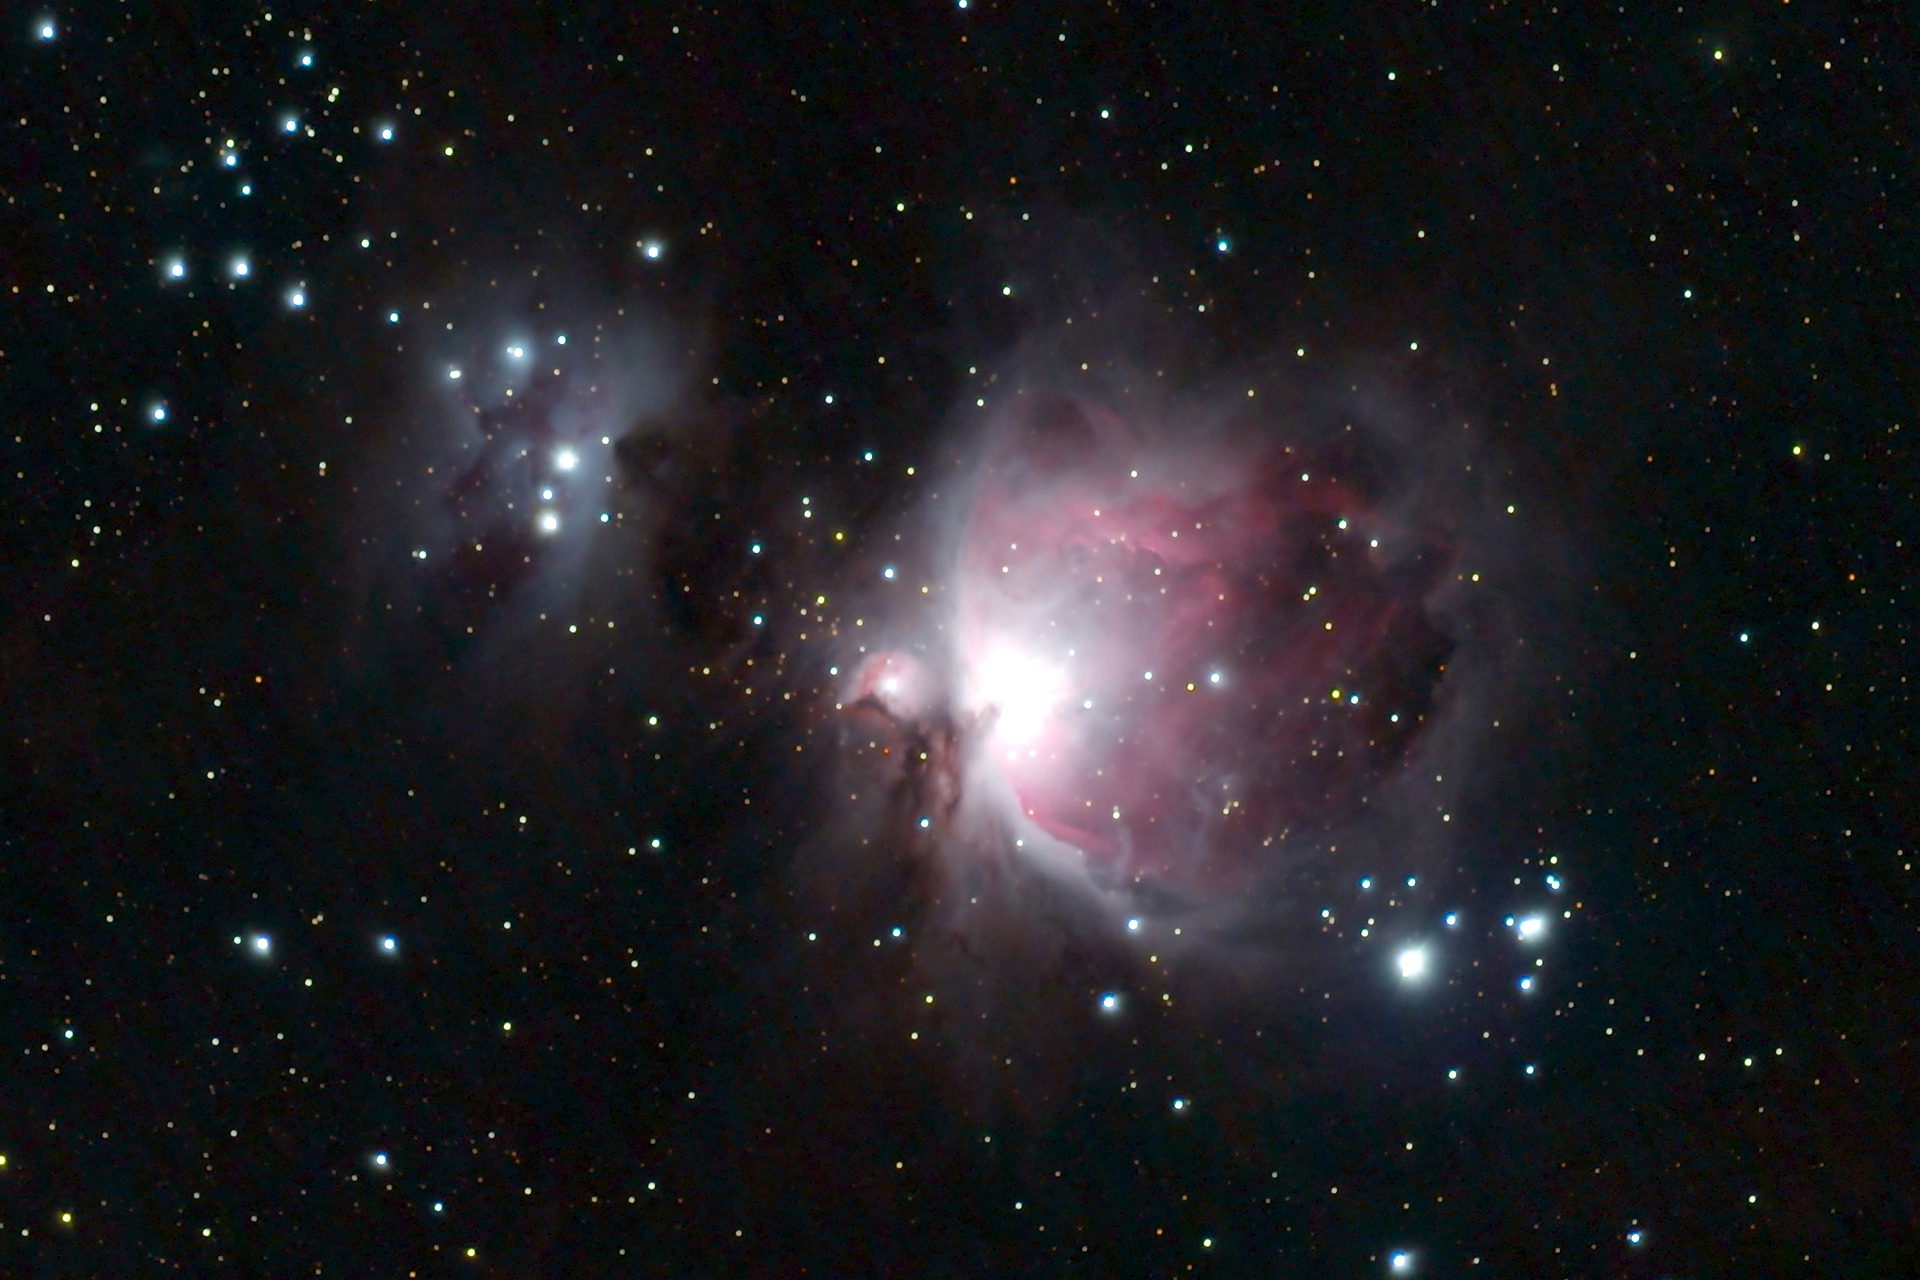 der große Orionnebel